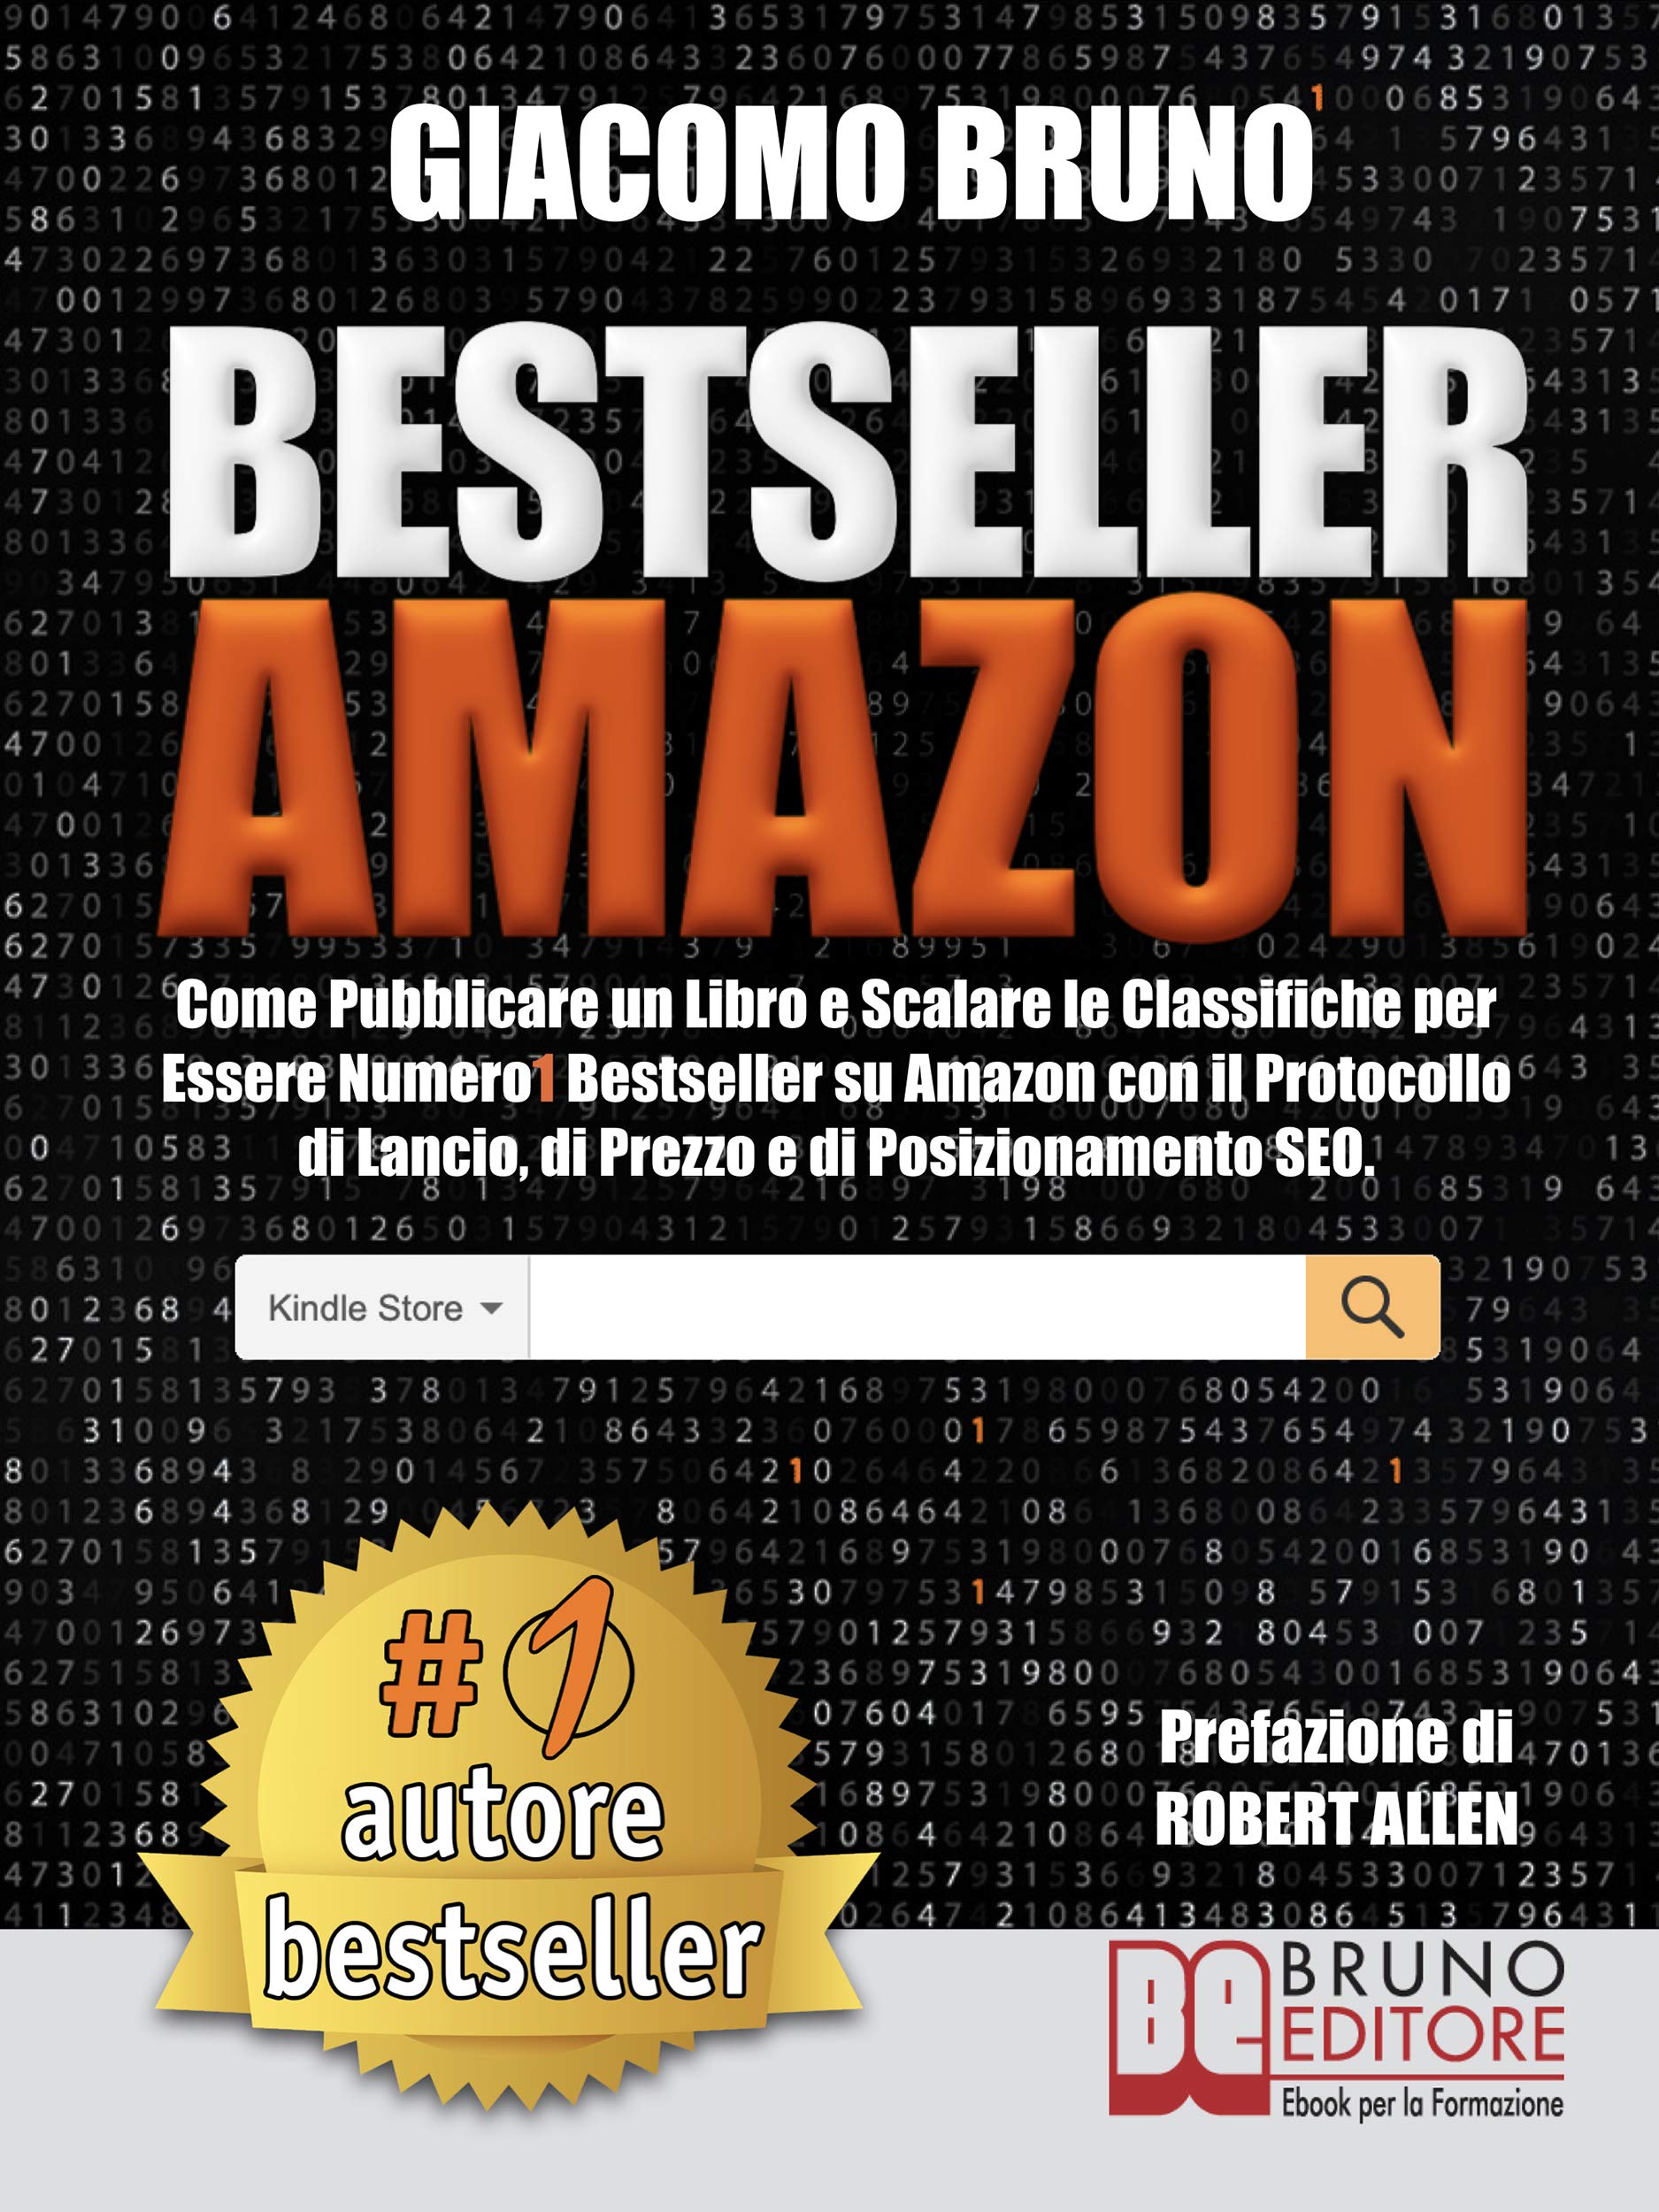 Bestseller Amazon: Come Pubblicare un Libro e Scalare le Classifiche per Essere Numero1 Bestseller su Amazon con il Protocollo di Lancio, di Prezzo e di Posizionamento SEO (Italian Edition)